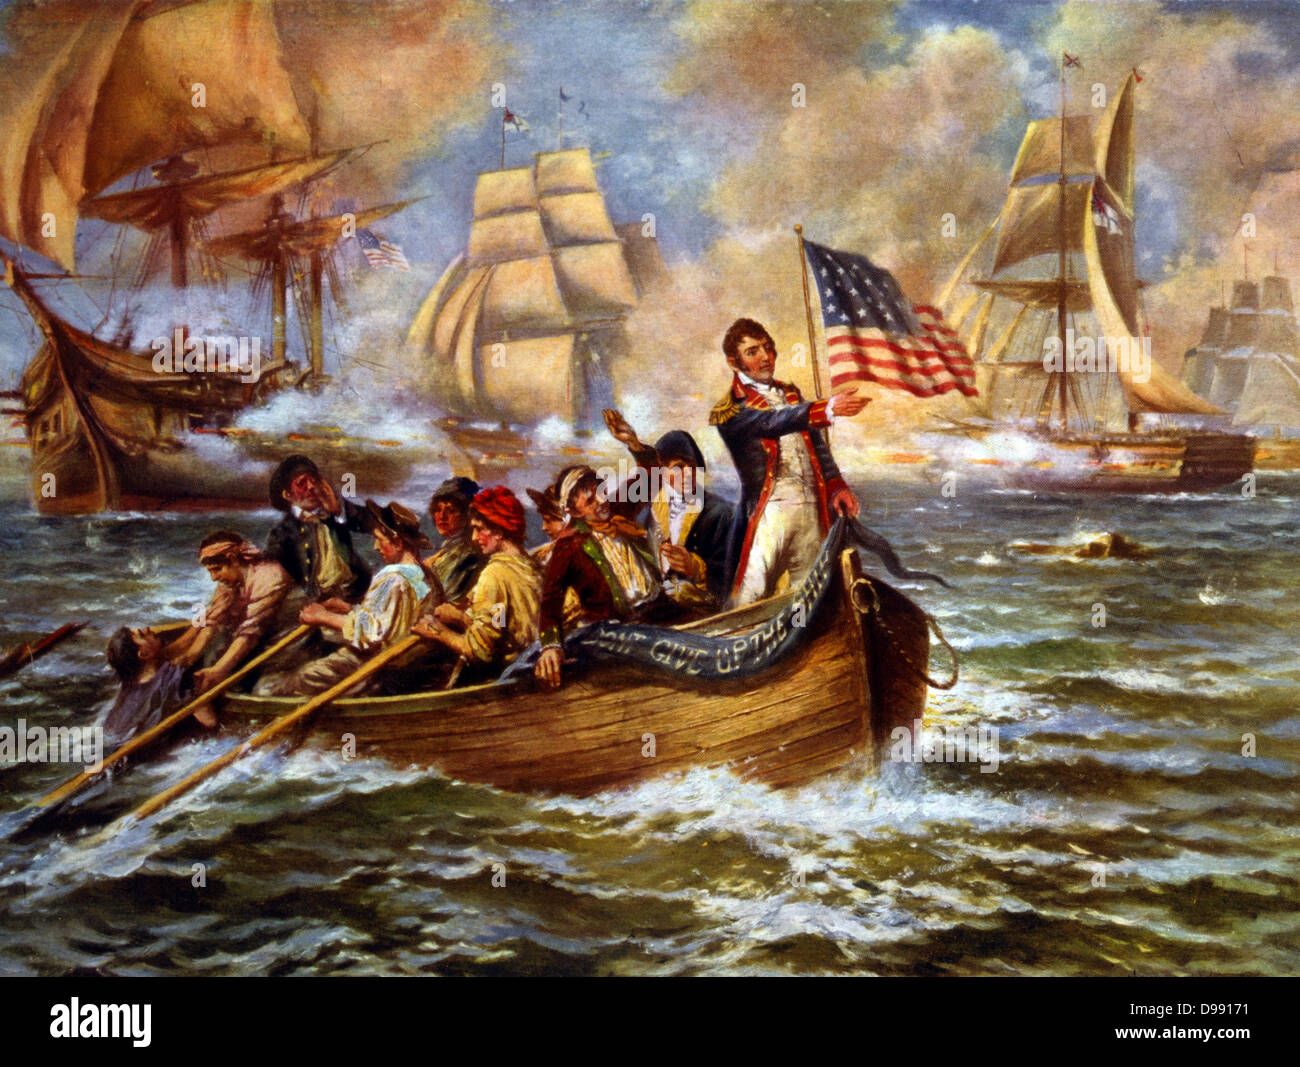 Krieg von 1812: Schlacht von Lake Erie (Put-in-Bay), Ohio, 10. September 1813. Oliver Hazard Perry im Bogen von kleinen Ruderboot nach seinem Flaggschiff "Lawrence" übertragen auf "Niagara" aufzugeben. Entscheidend den amerikanischen Sieg über Großbritannien. Naval. C 1911 Stockfoto